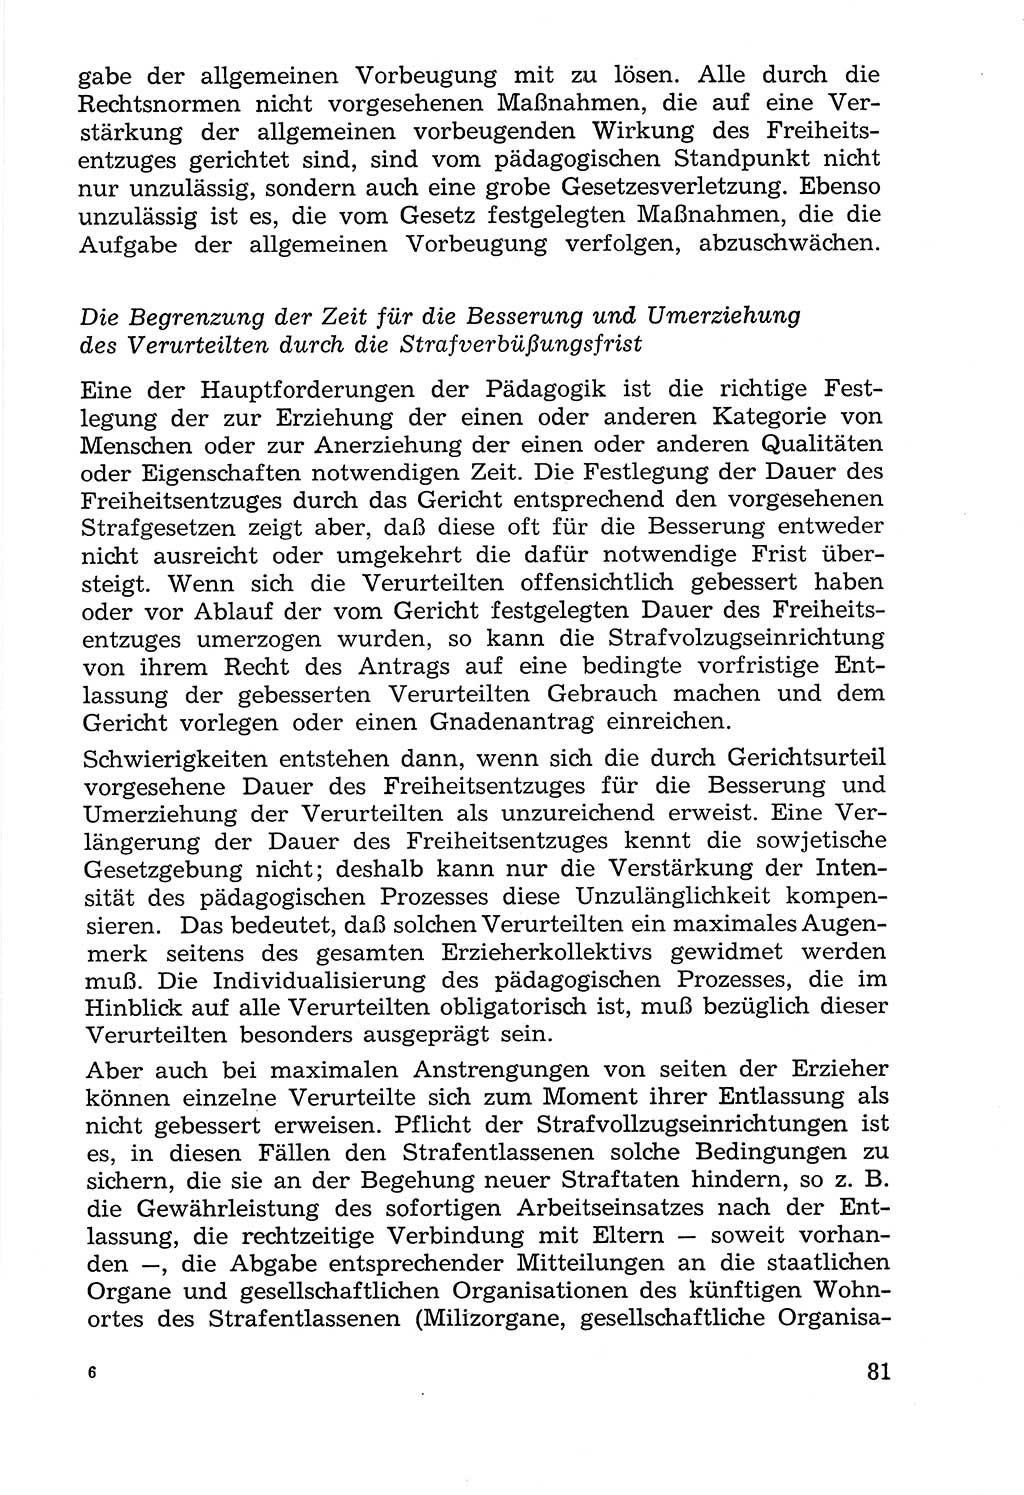 Lehrbuch der Strafvollzugspädagogik [Deutsche Demokratische Republik (DDR)] 1969, Seite 81 (Lb. SV-Pd. DDR 1969, S. 81)